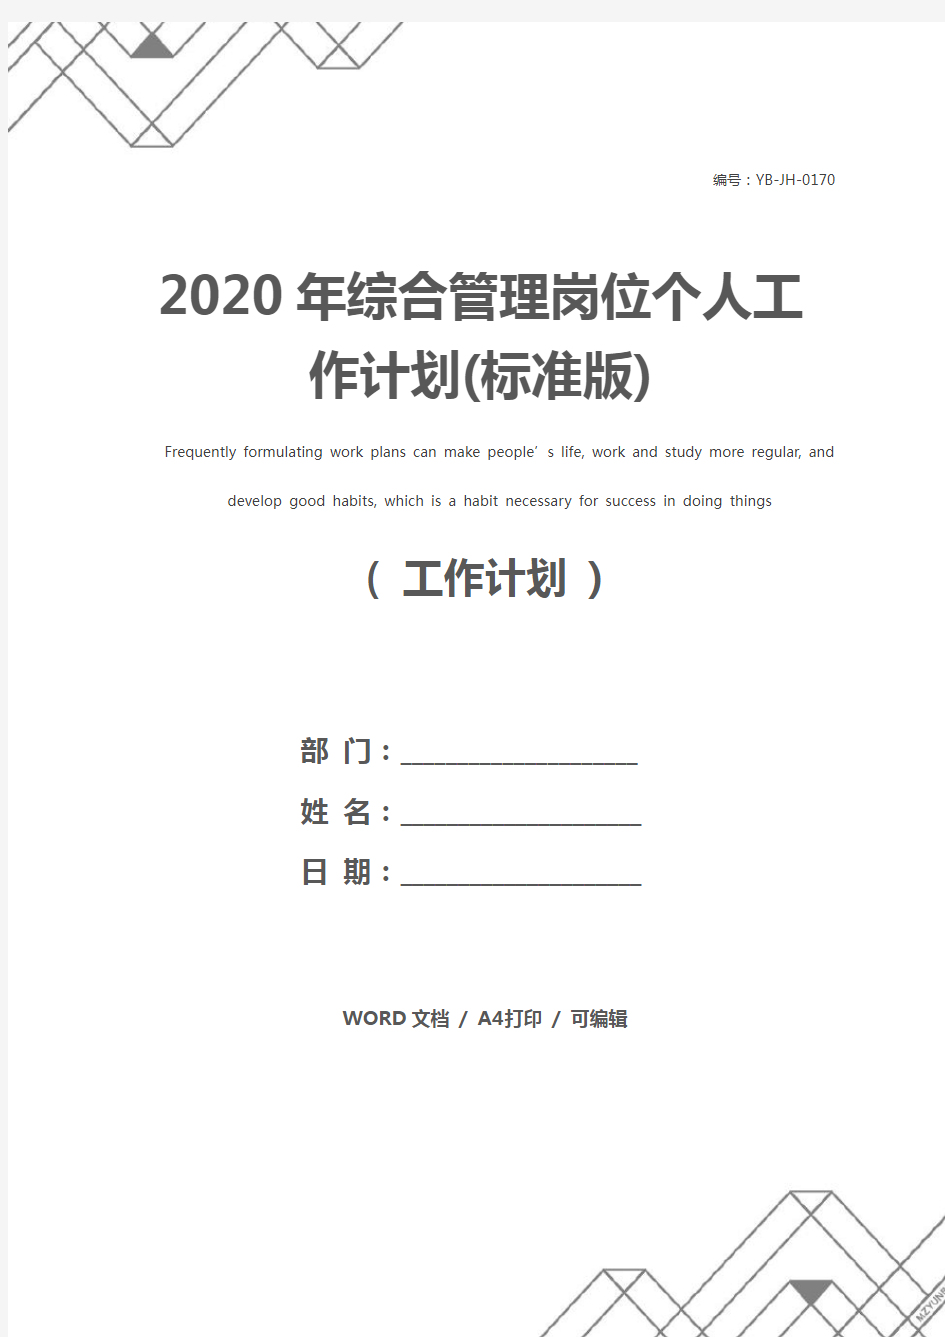 2020年综合管理岗位个人工作计划(标准版)